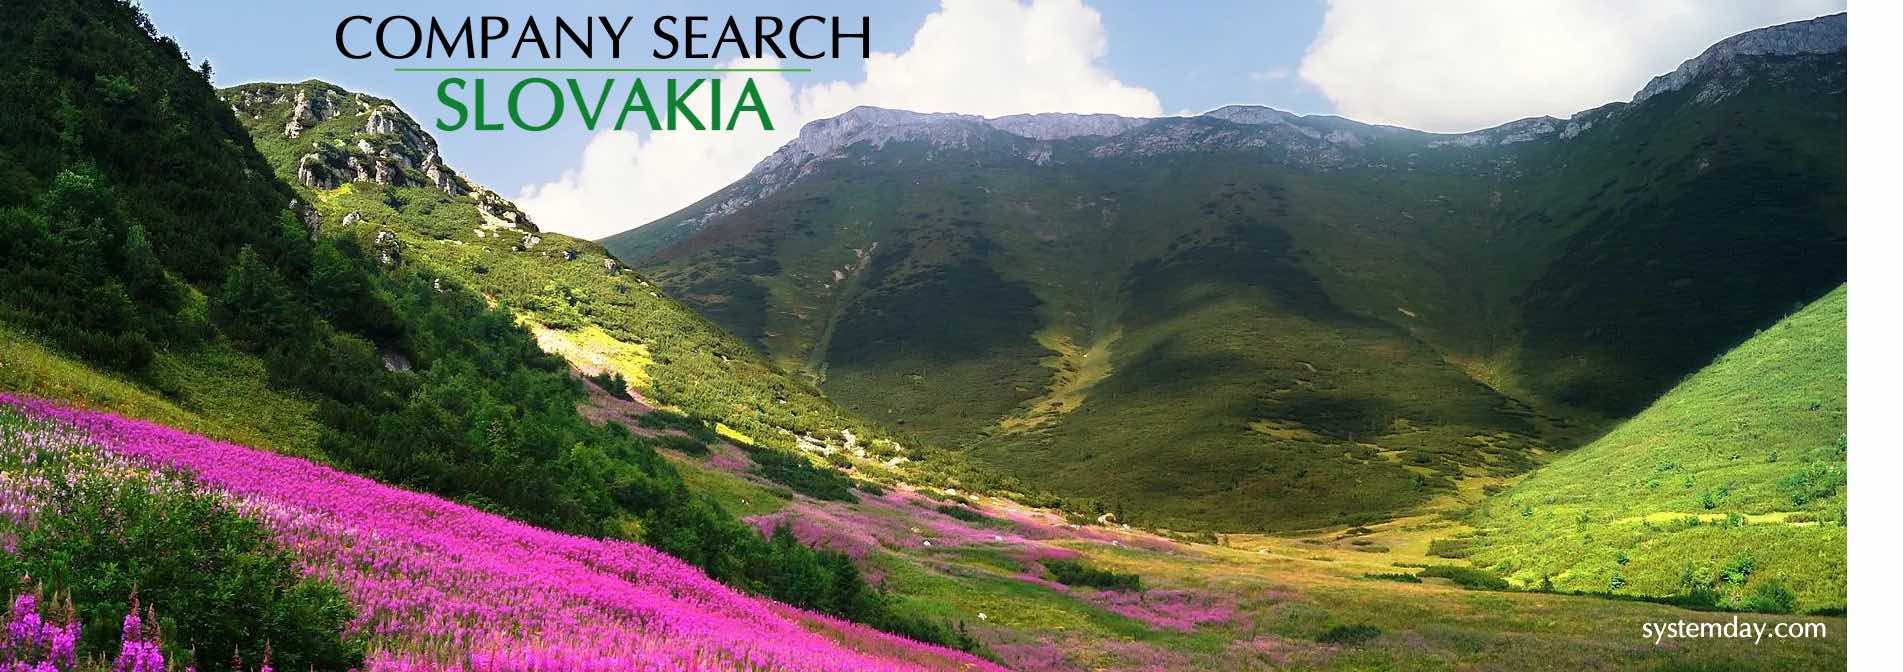 Slovakia Company Search